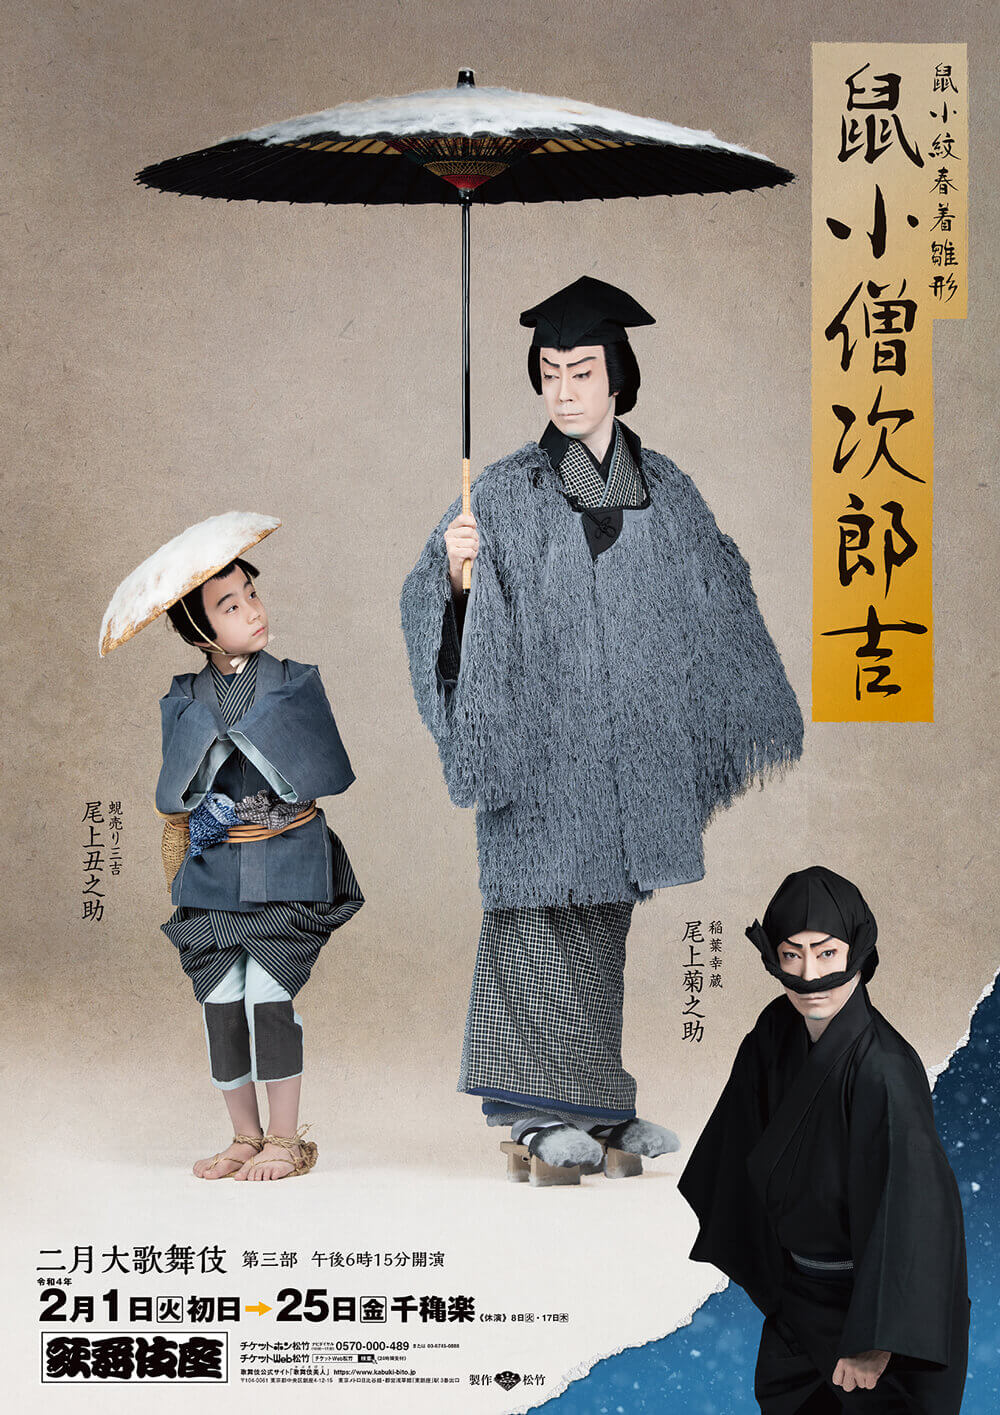 歌舞伎座「二月大歌舞伎」特別ポスター公開